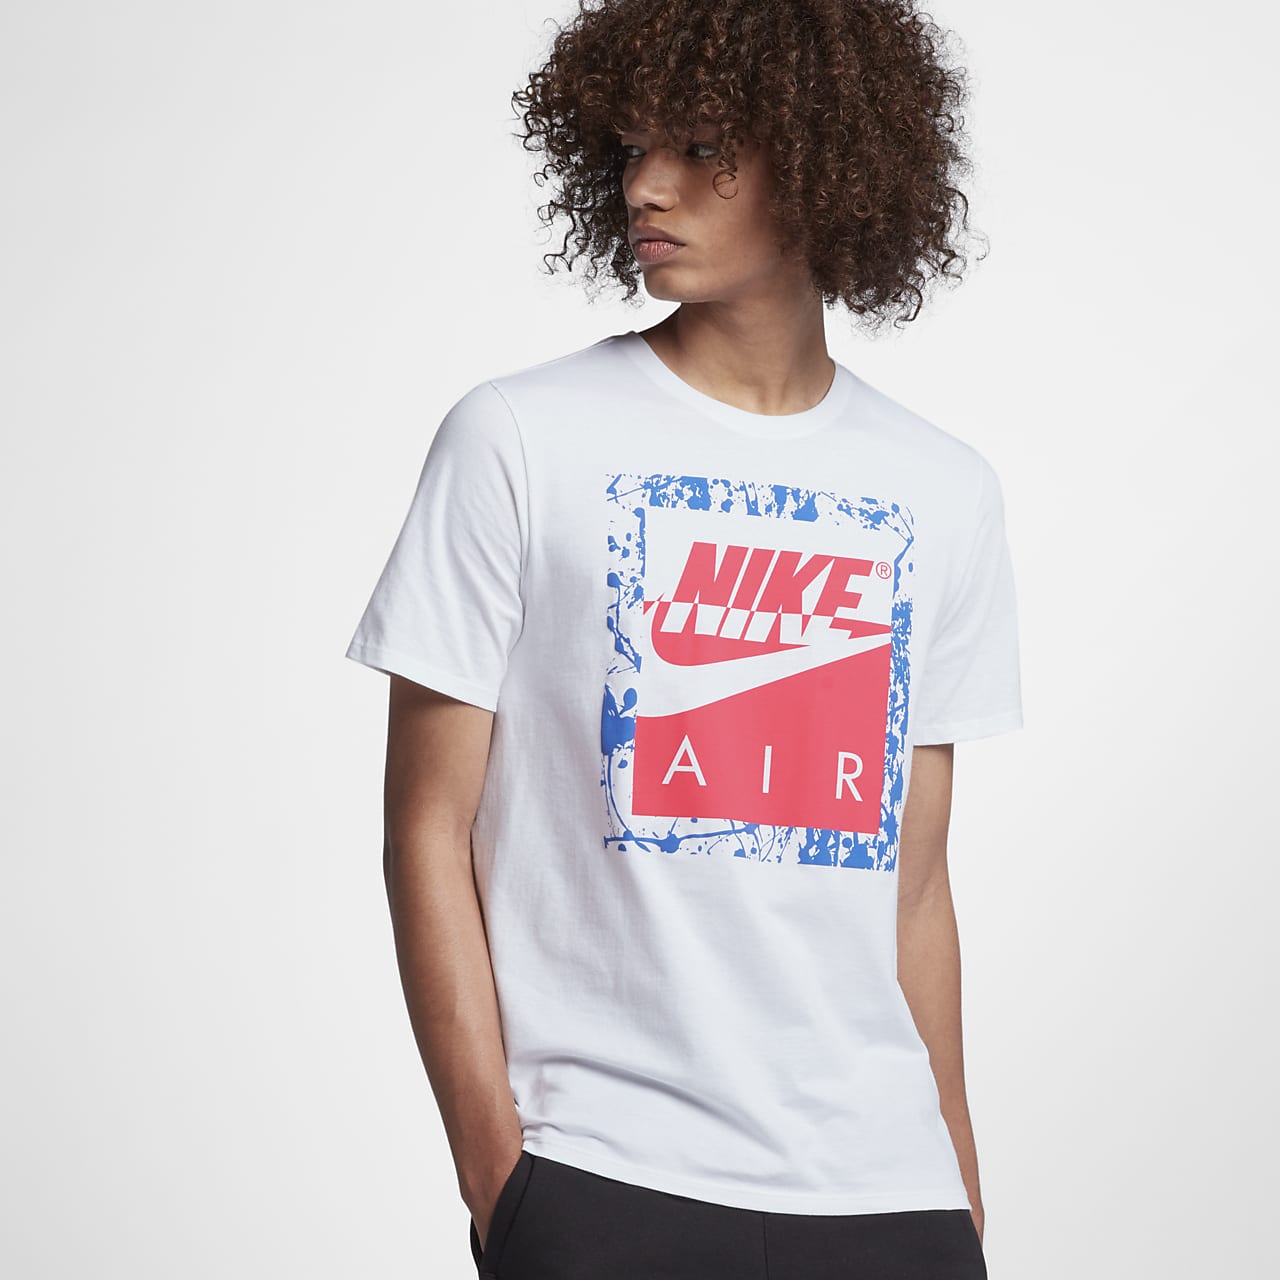 Buy > nike air shirt > in stock